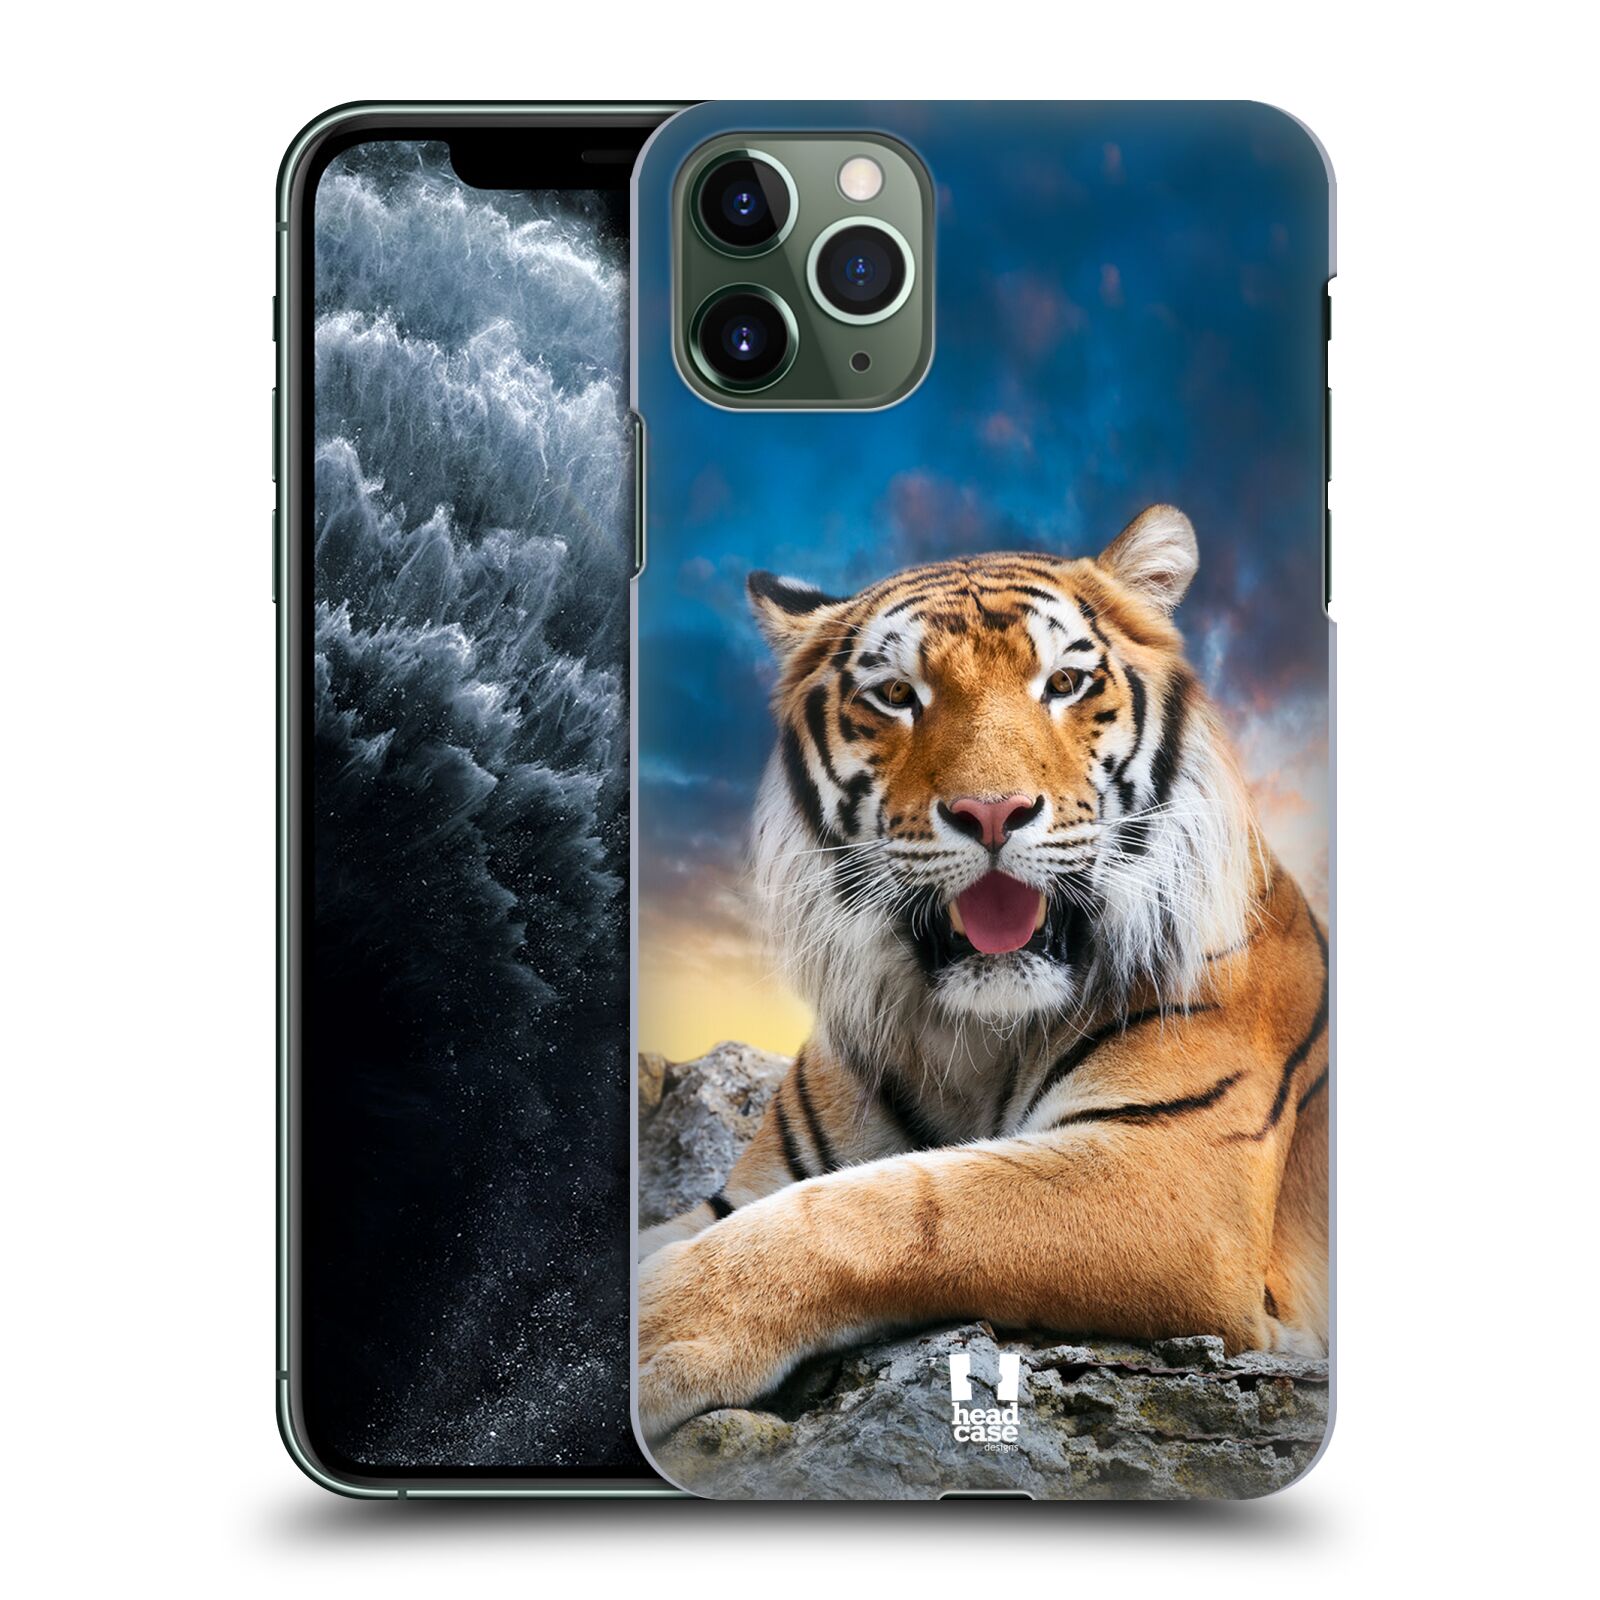  Pouzdro na mobil Apple Iphone 11 PRO MAX - HEAD CASE - vzor Divočina, Divoký život a zvířata foto TYGR A NEBE